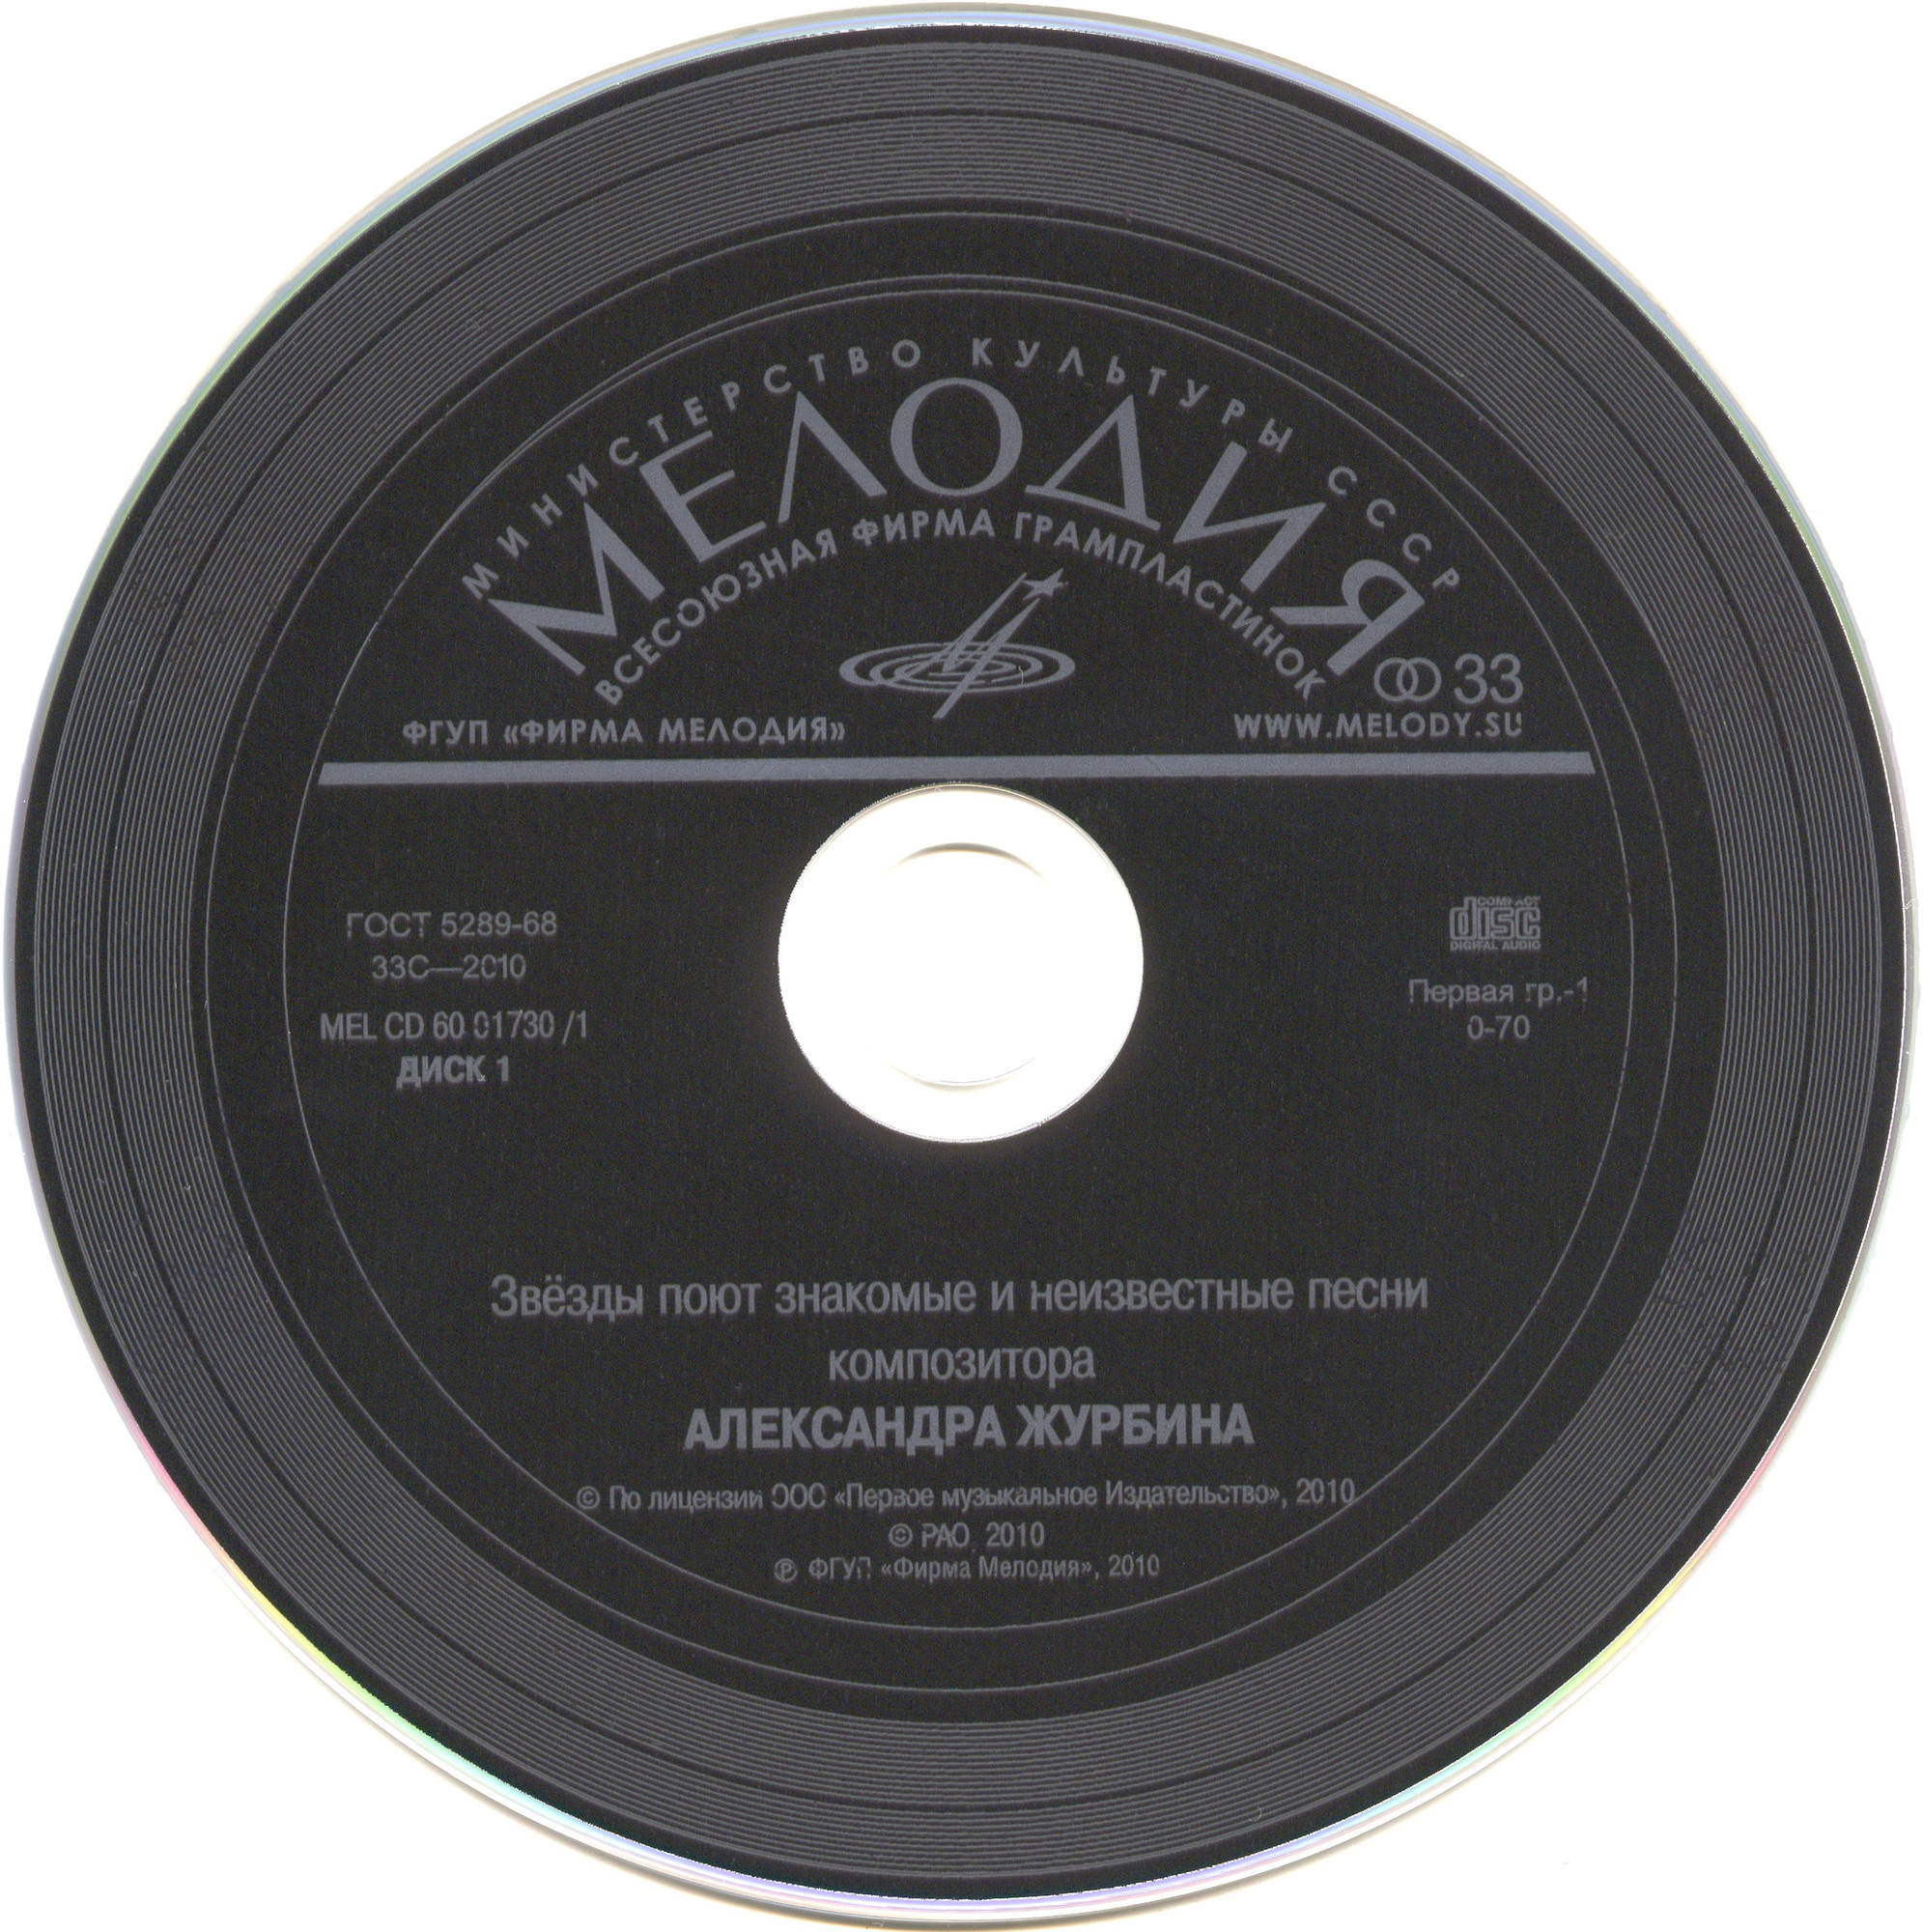 Звёзды поют знакомые и неизвестные песни композитора Александра Журбина (2 CD)